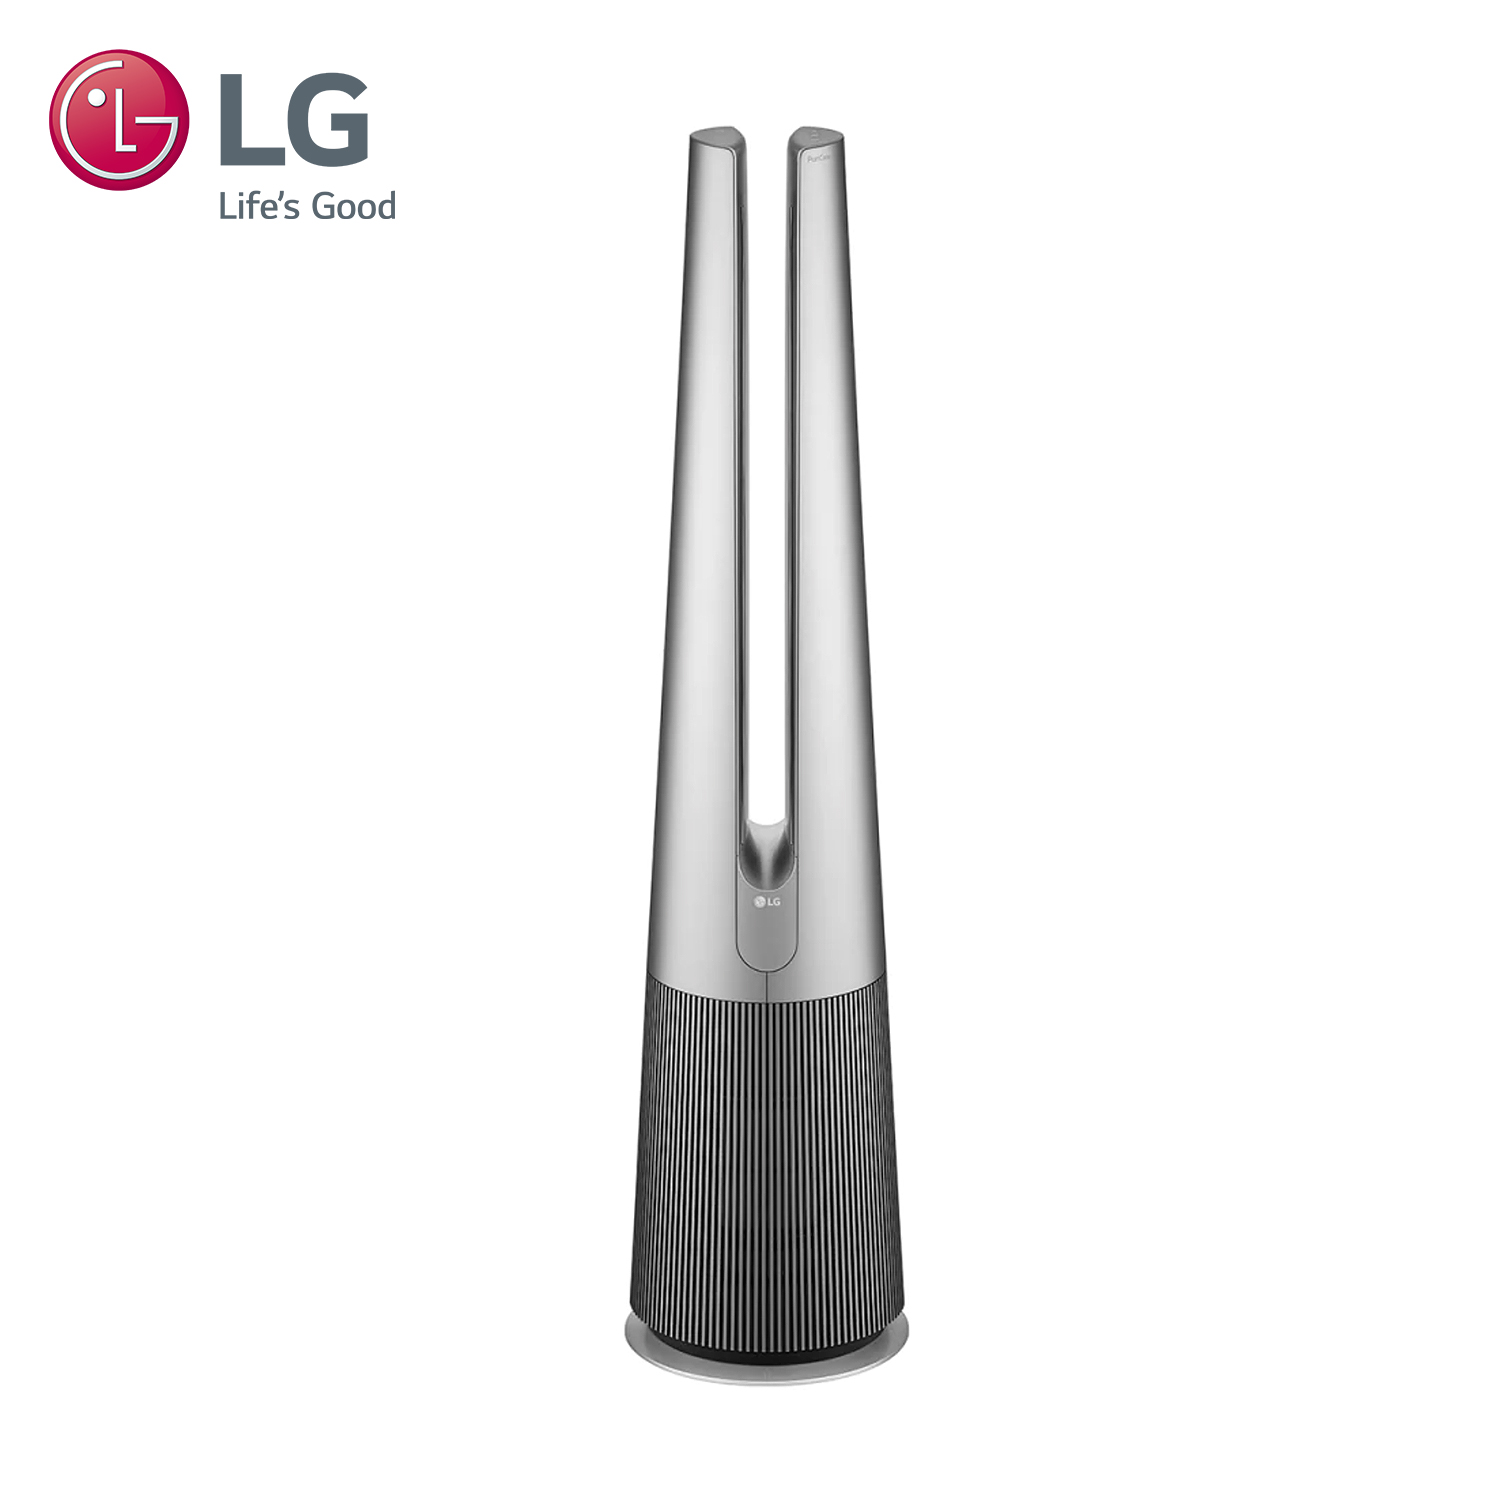 (展示品)LG AeroTower空氣清淨機-UV版(太空銀)